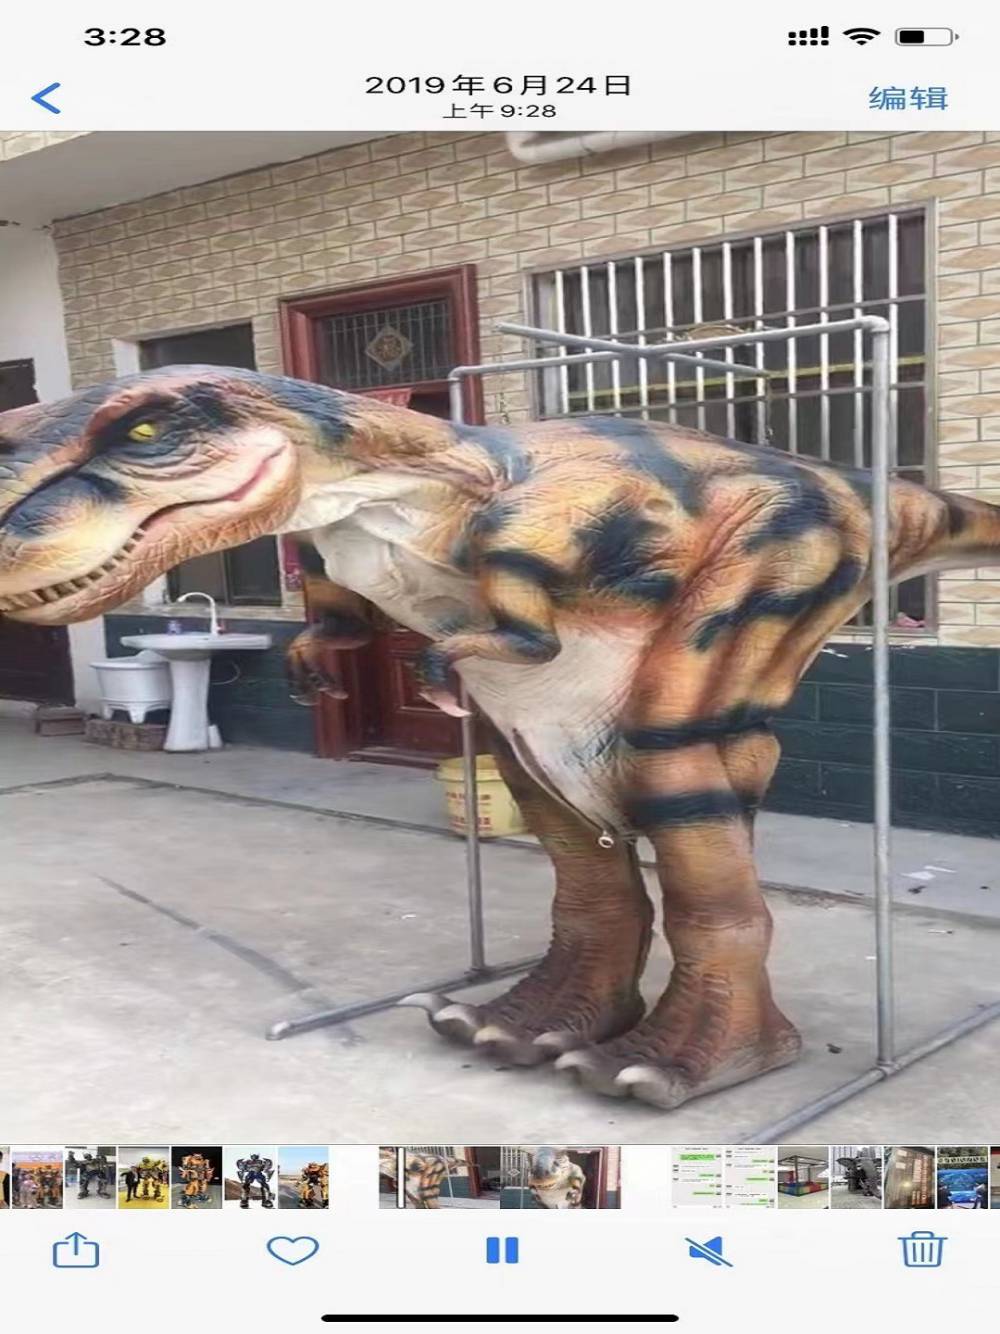 高仿真电动恐龙模型出售 河南周口工厂生产制作